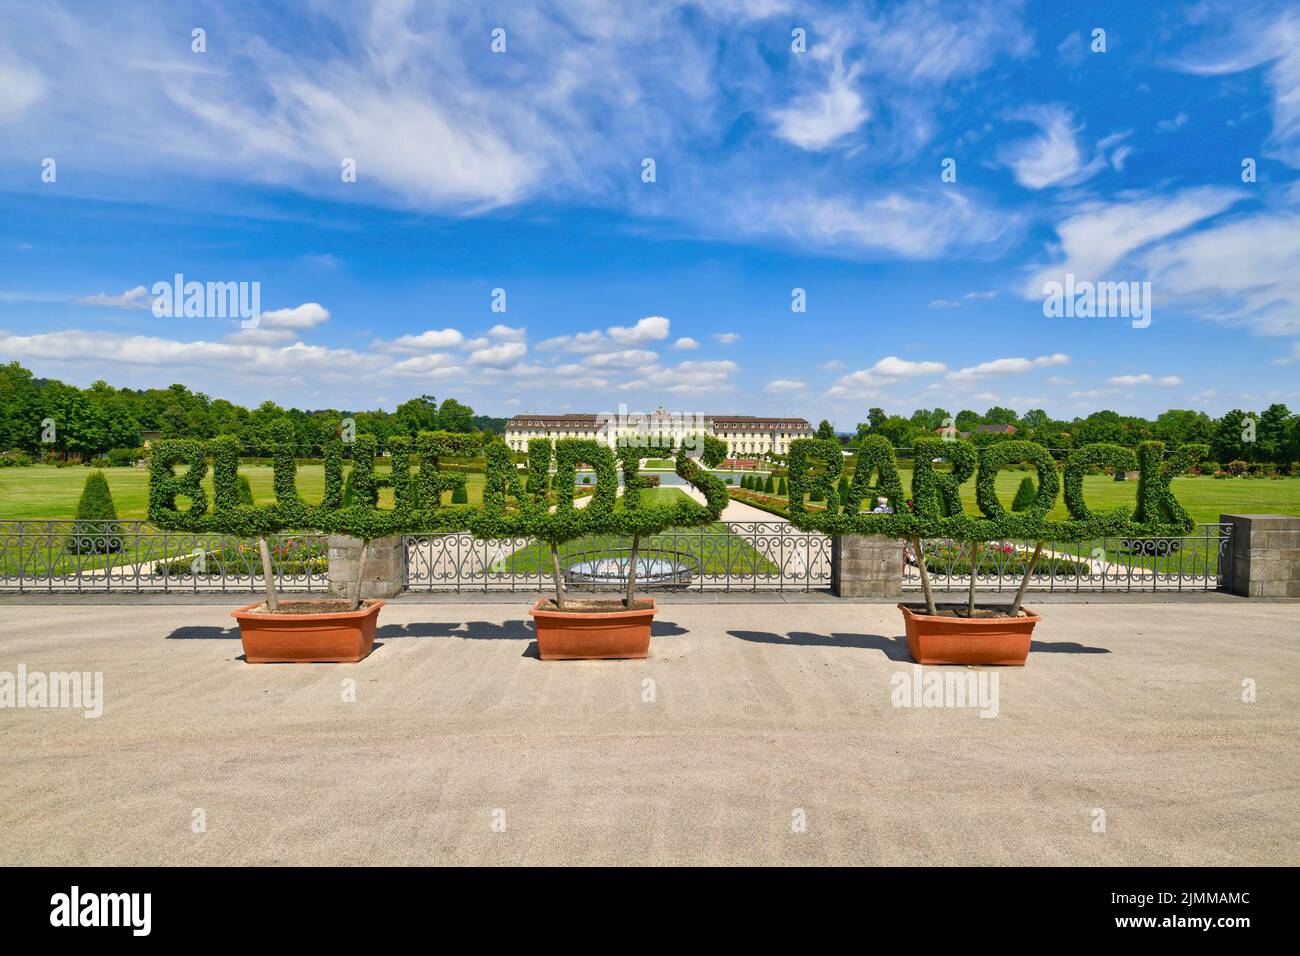 Ludwigsburg, Germania - Agosto 2022: Segno fatto di piante che dice 'Blühendes Barock' di fronte al giardino in stile barocco con palazzo residenziale Foto Stock